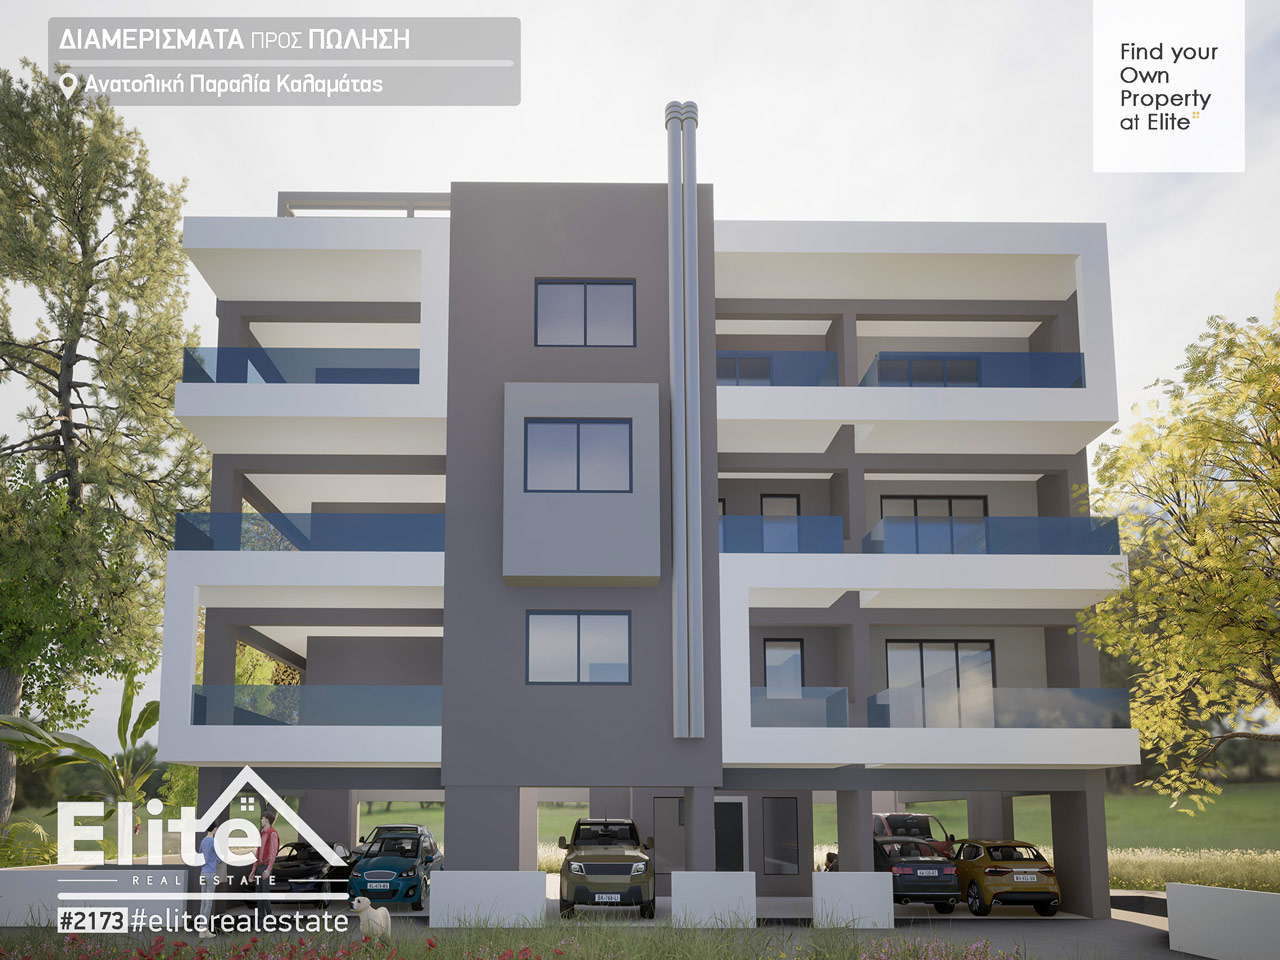 Verkauf von neu gebauten Wohnungen Kalamata | ELITE